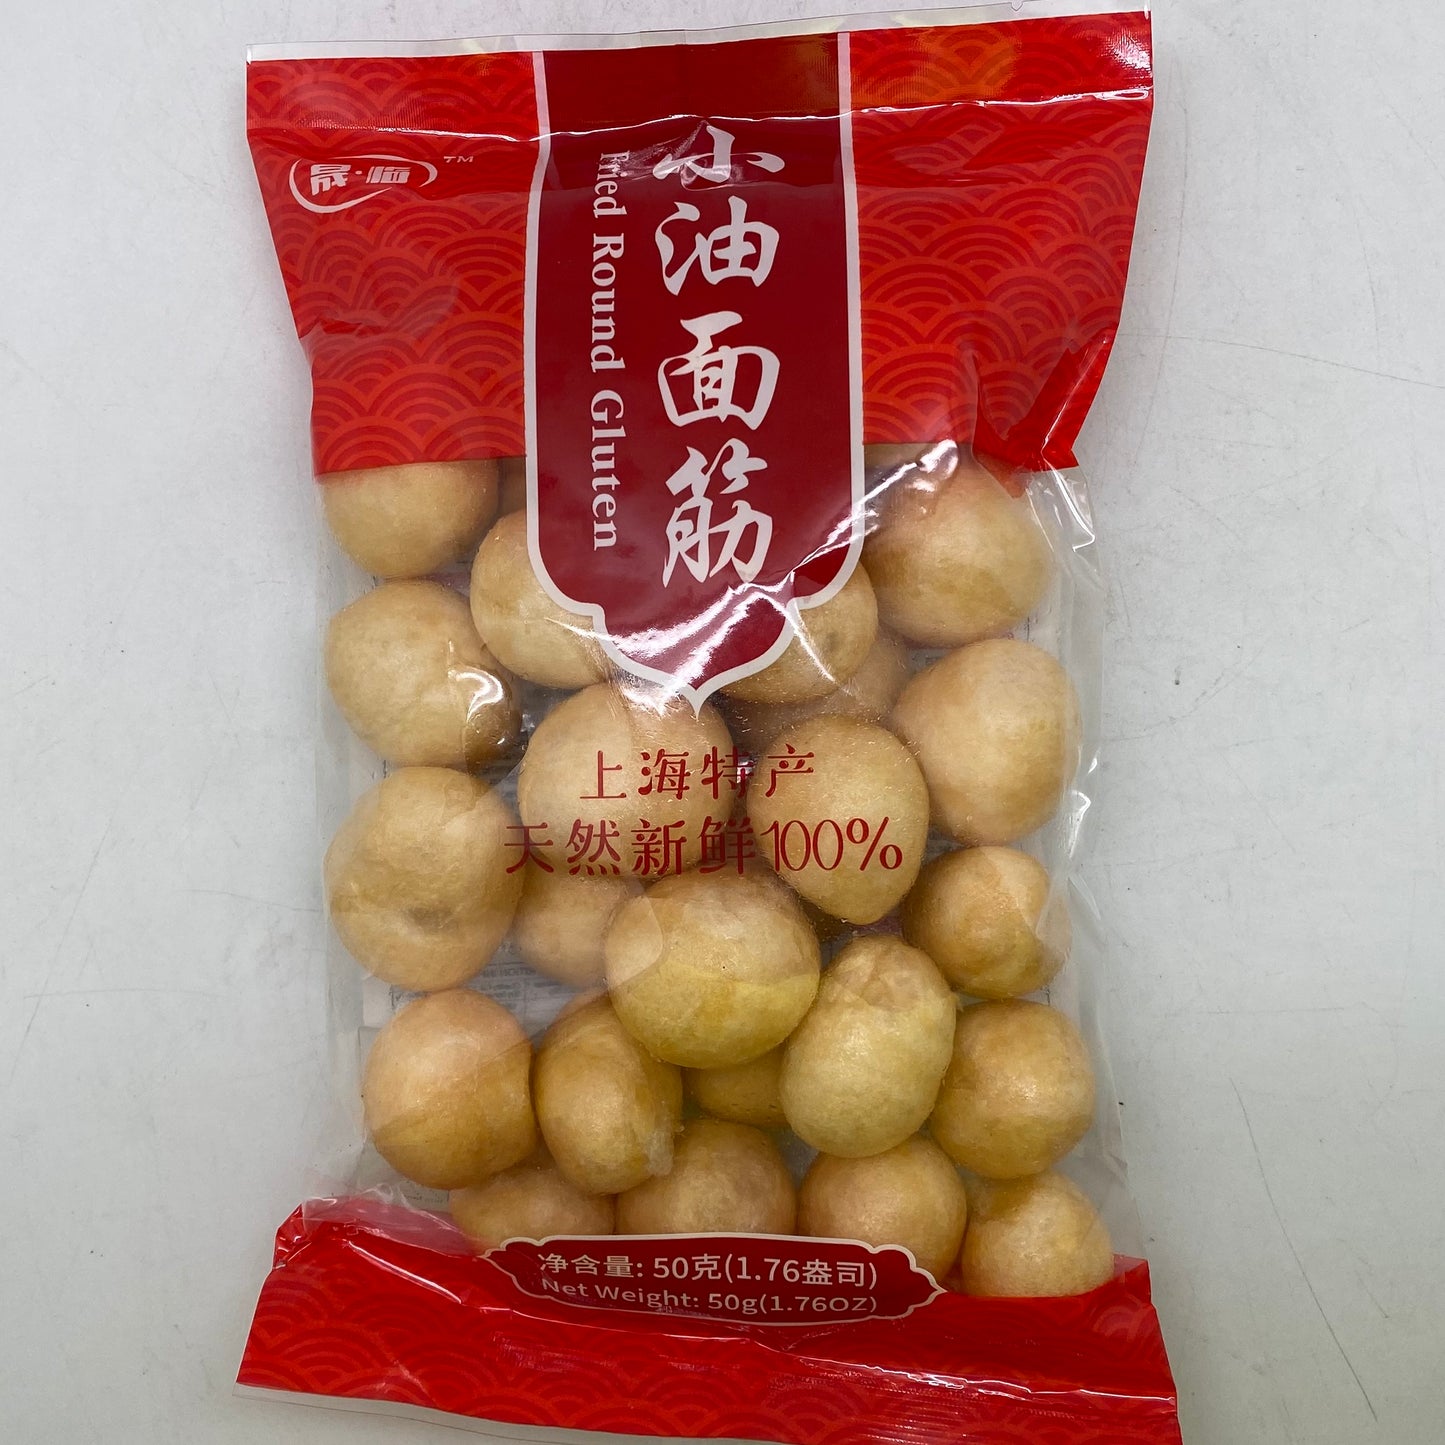 V013A Sheng Hao Brand - Fried Round Gluten 50g - 50bags / 1Ctn